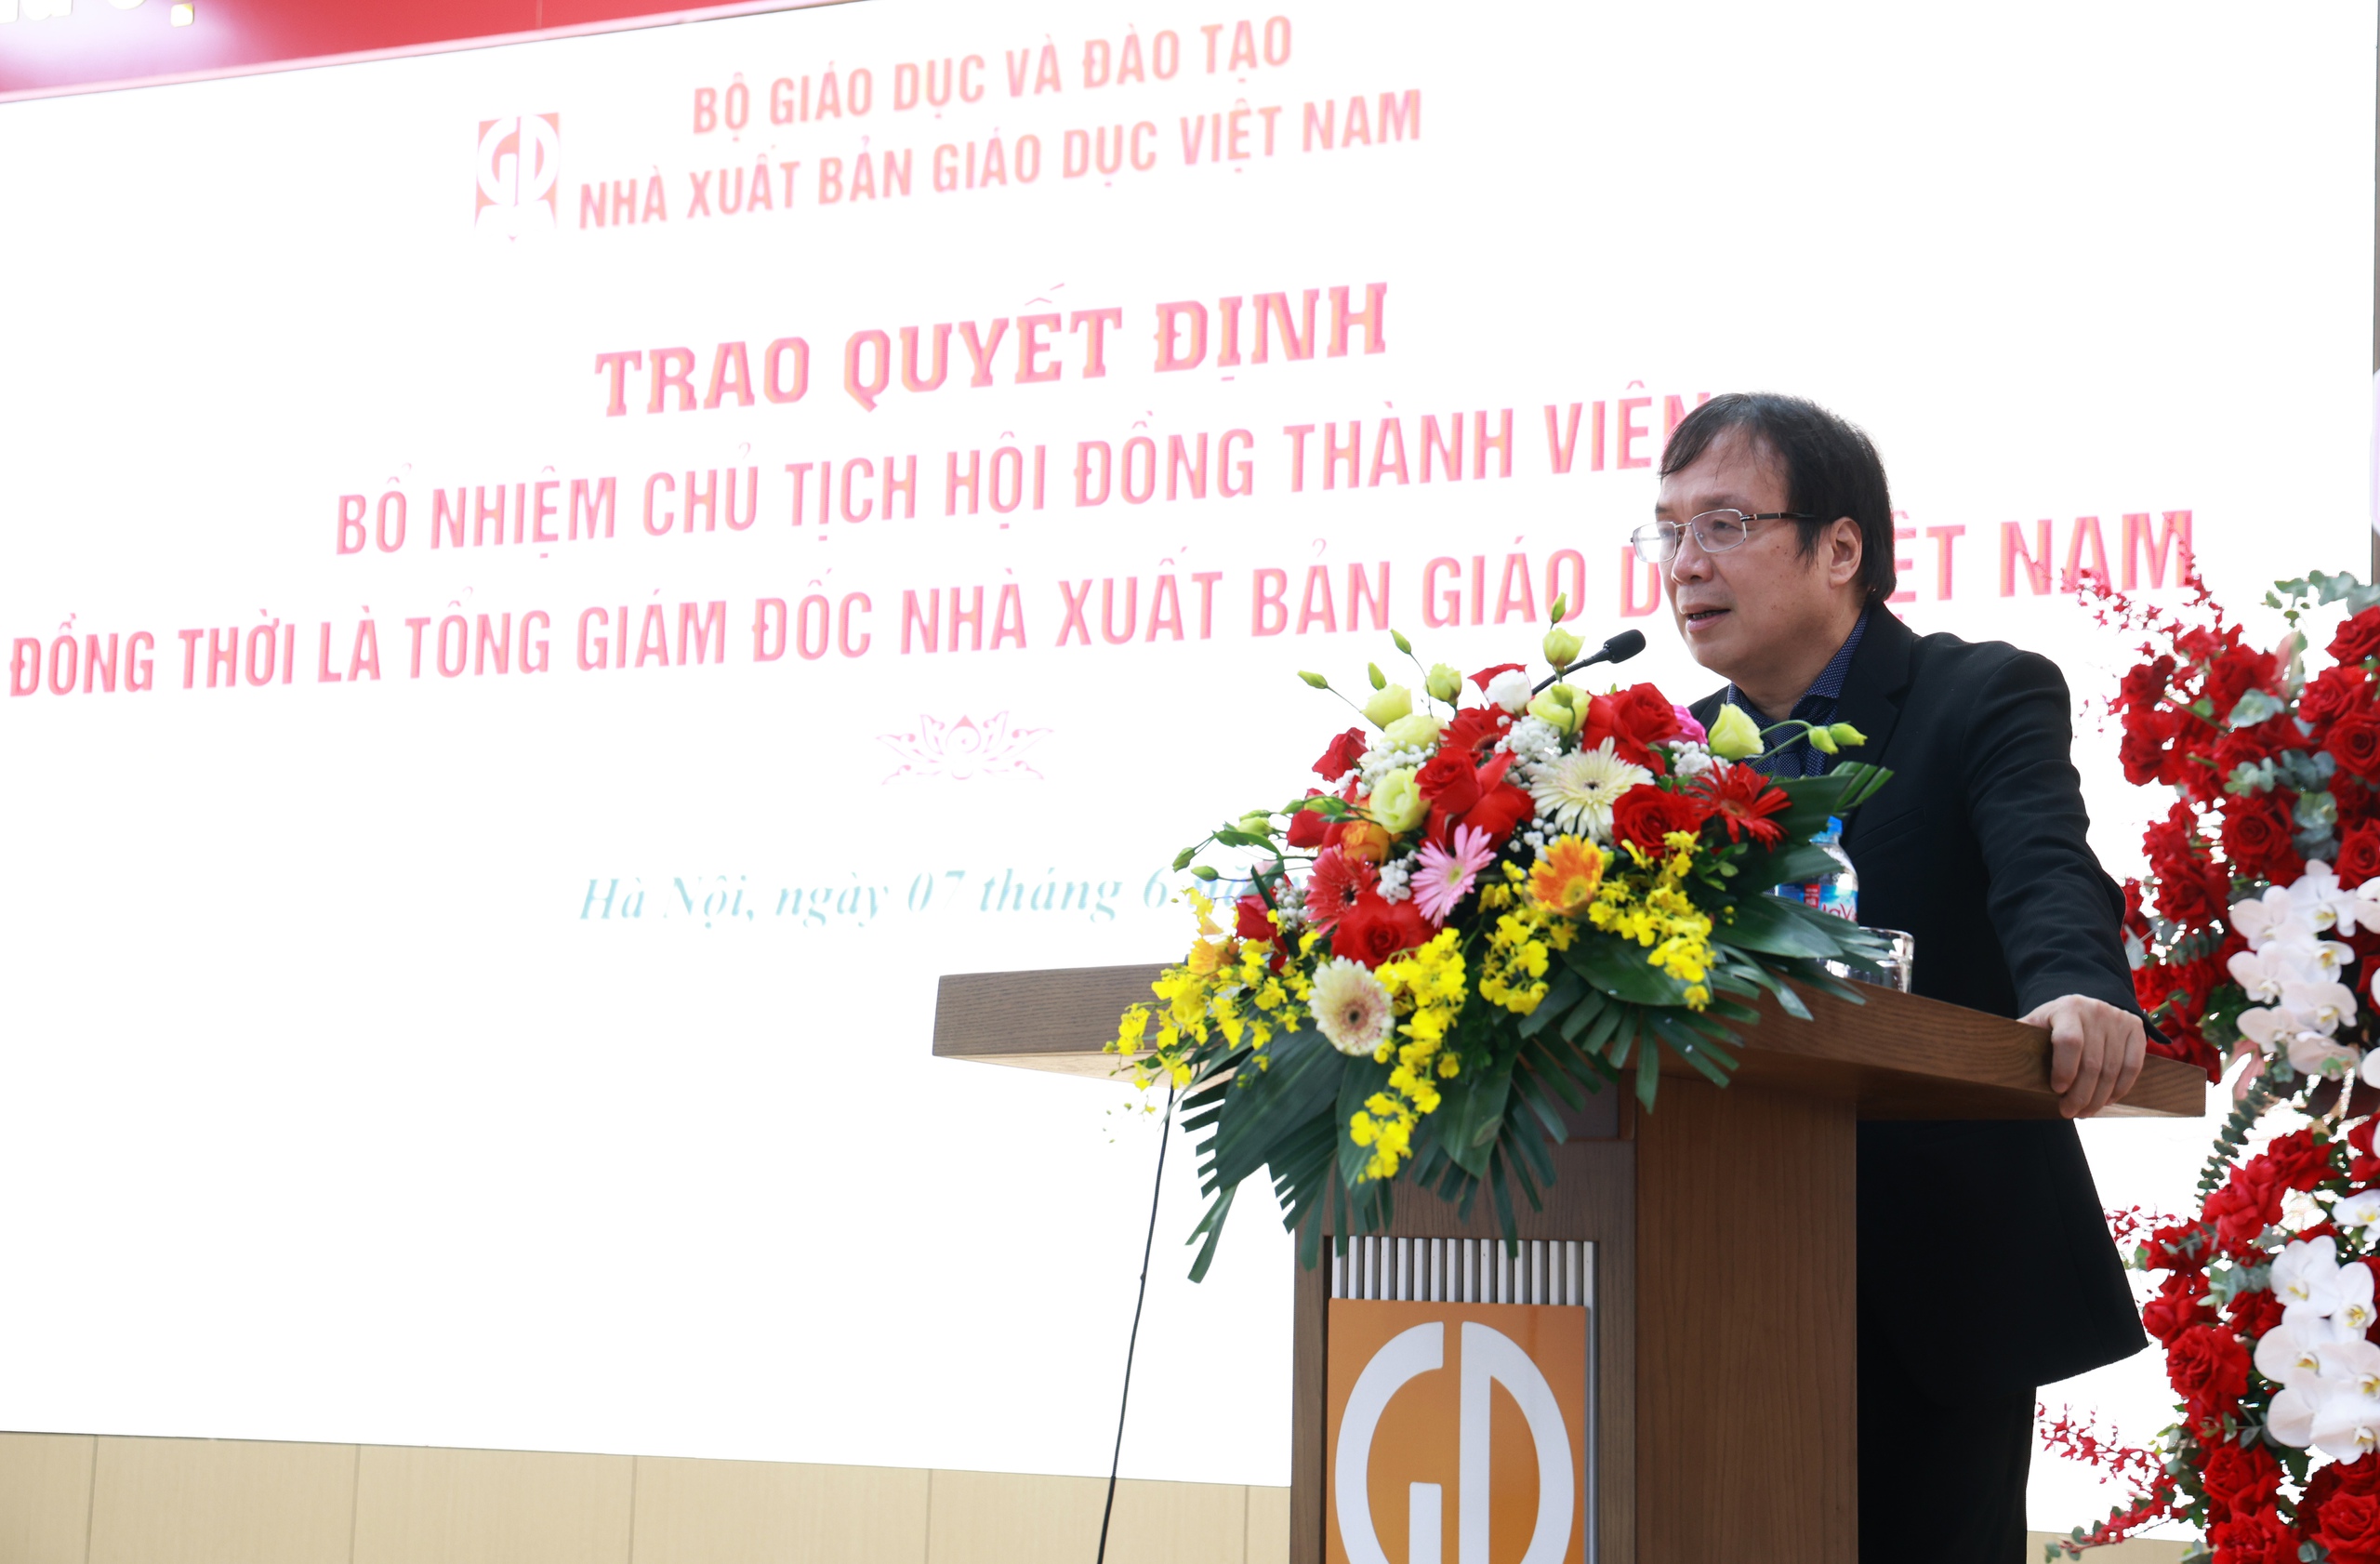 Trao quyết định bổ nhiệm tân Chủ tịch Hội đồng thành viên, Tổng Giám đốc NXB Giáo dục Việt Nam- Ảnh 3.